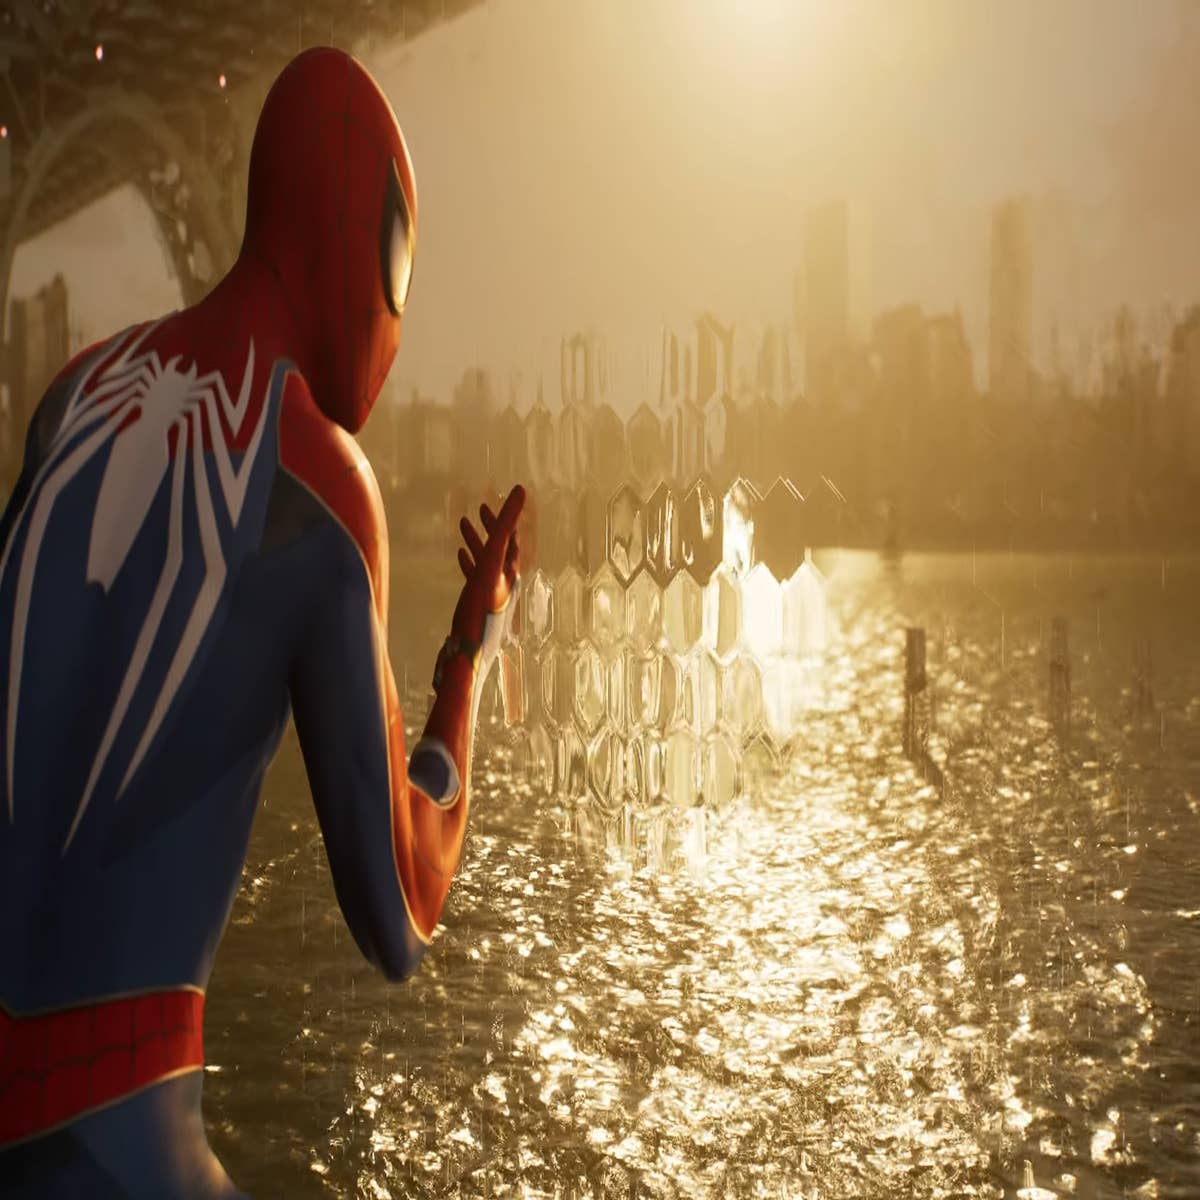 Marvel's Spider-Man 2, PS5